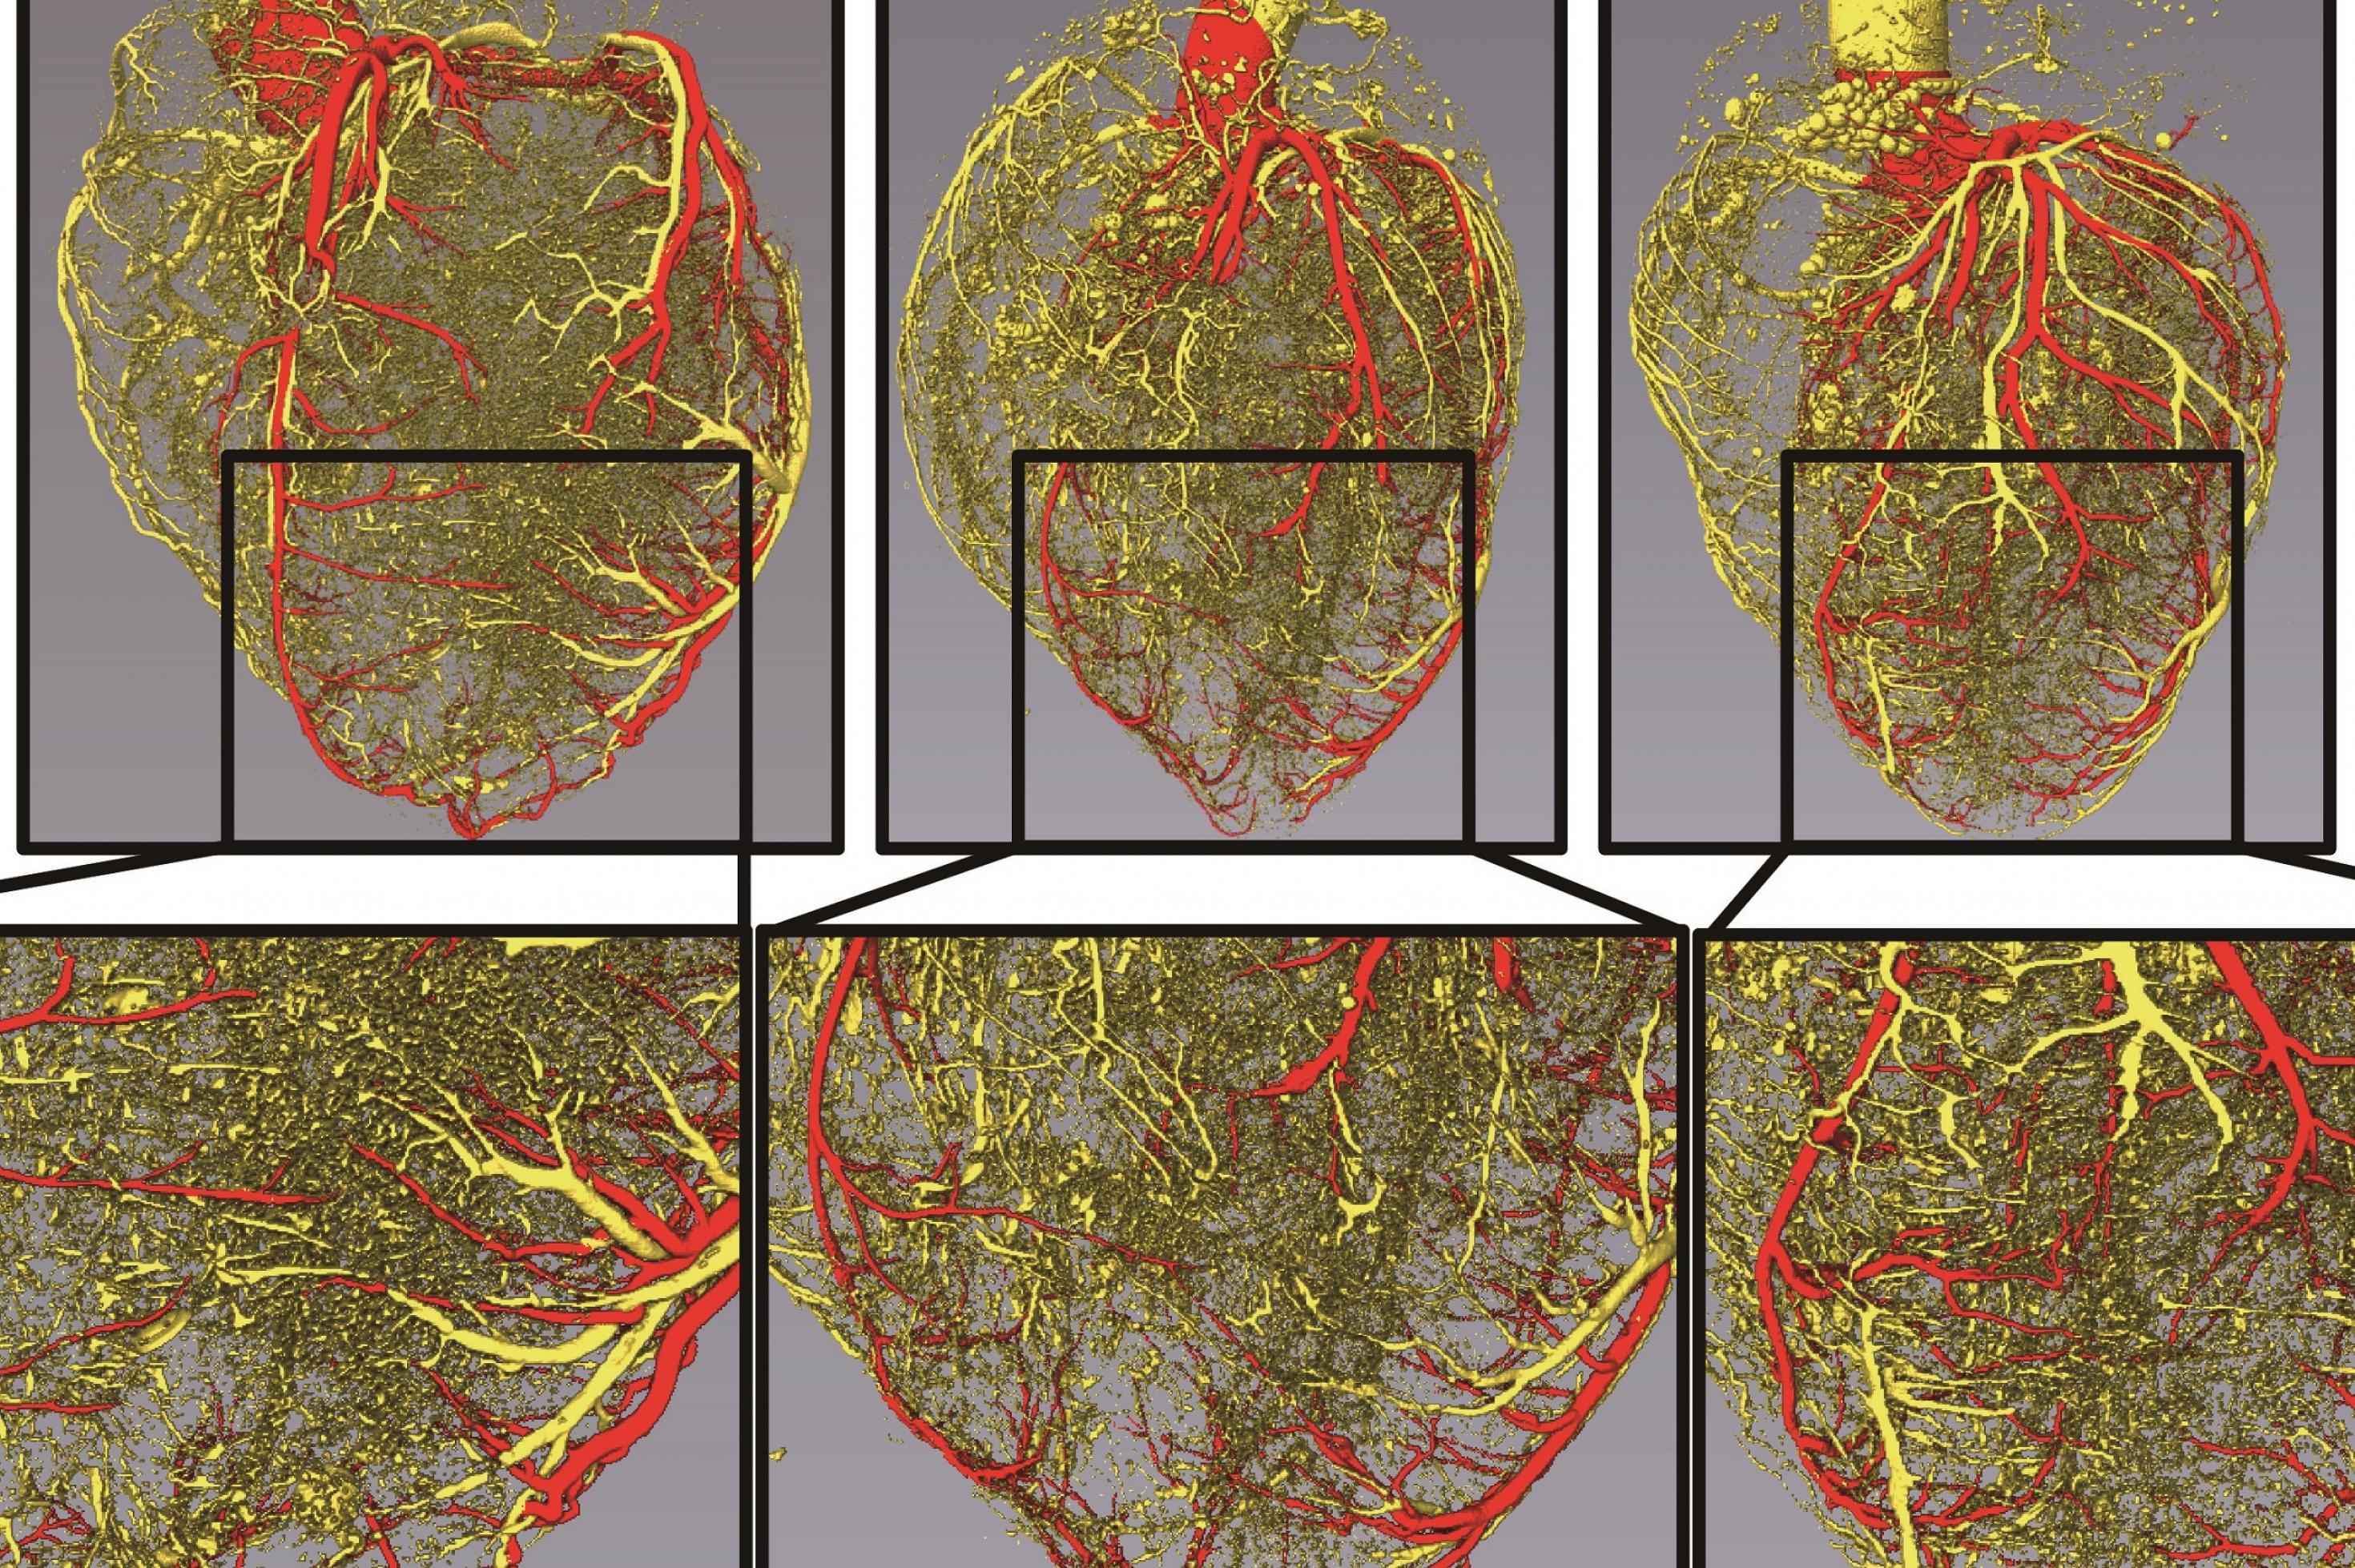 Aufnahmen der Herzkranzgefäße dreier Herzen. Das linke Herz hat mehr feine Blutgefäße als das mittlere und das rechte.